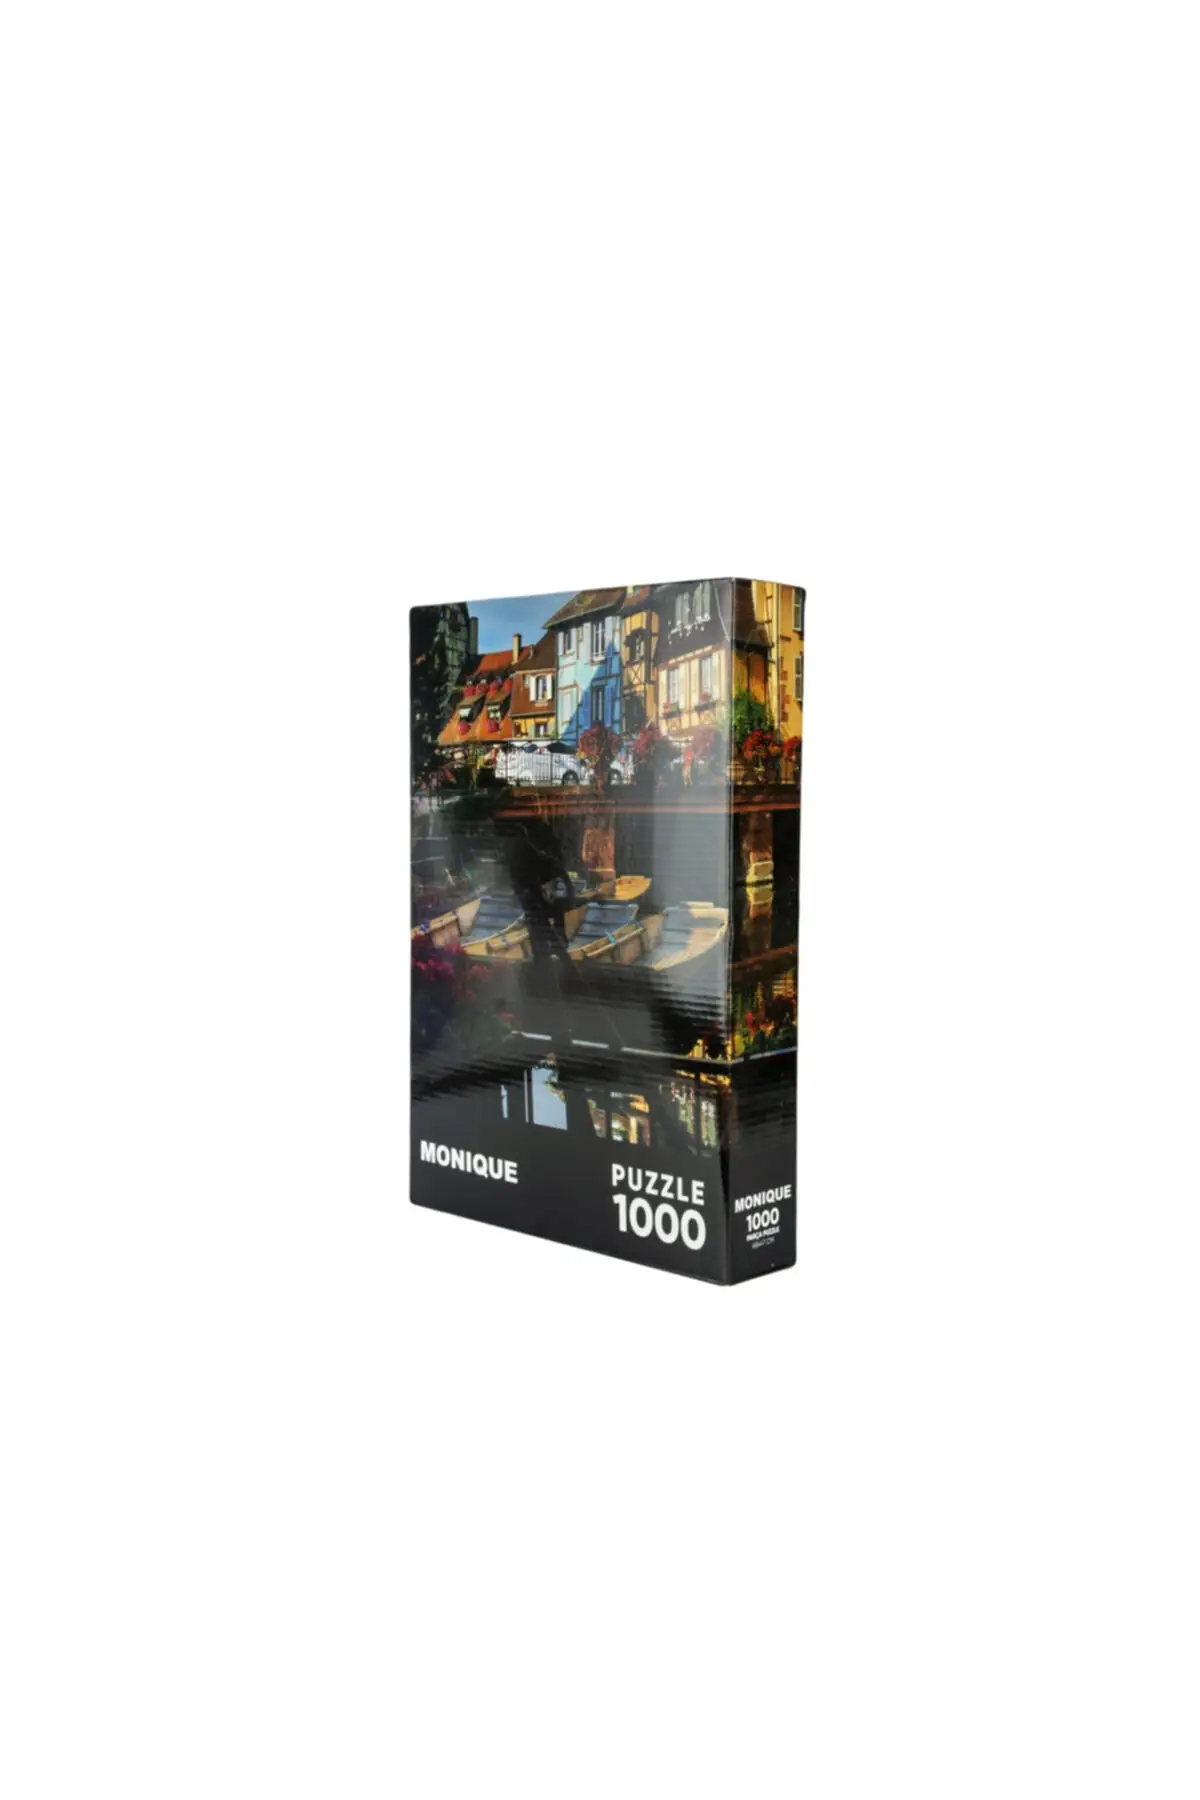 

1000 штук головоломка Gondola игровой с узором групп хобби и досуг жизни